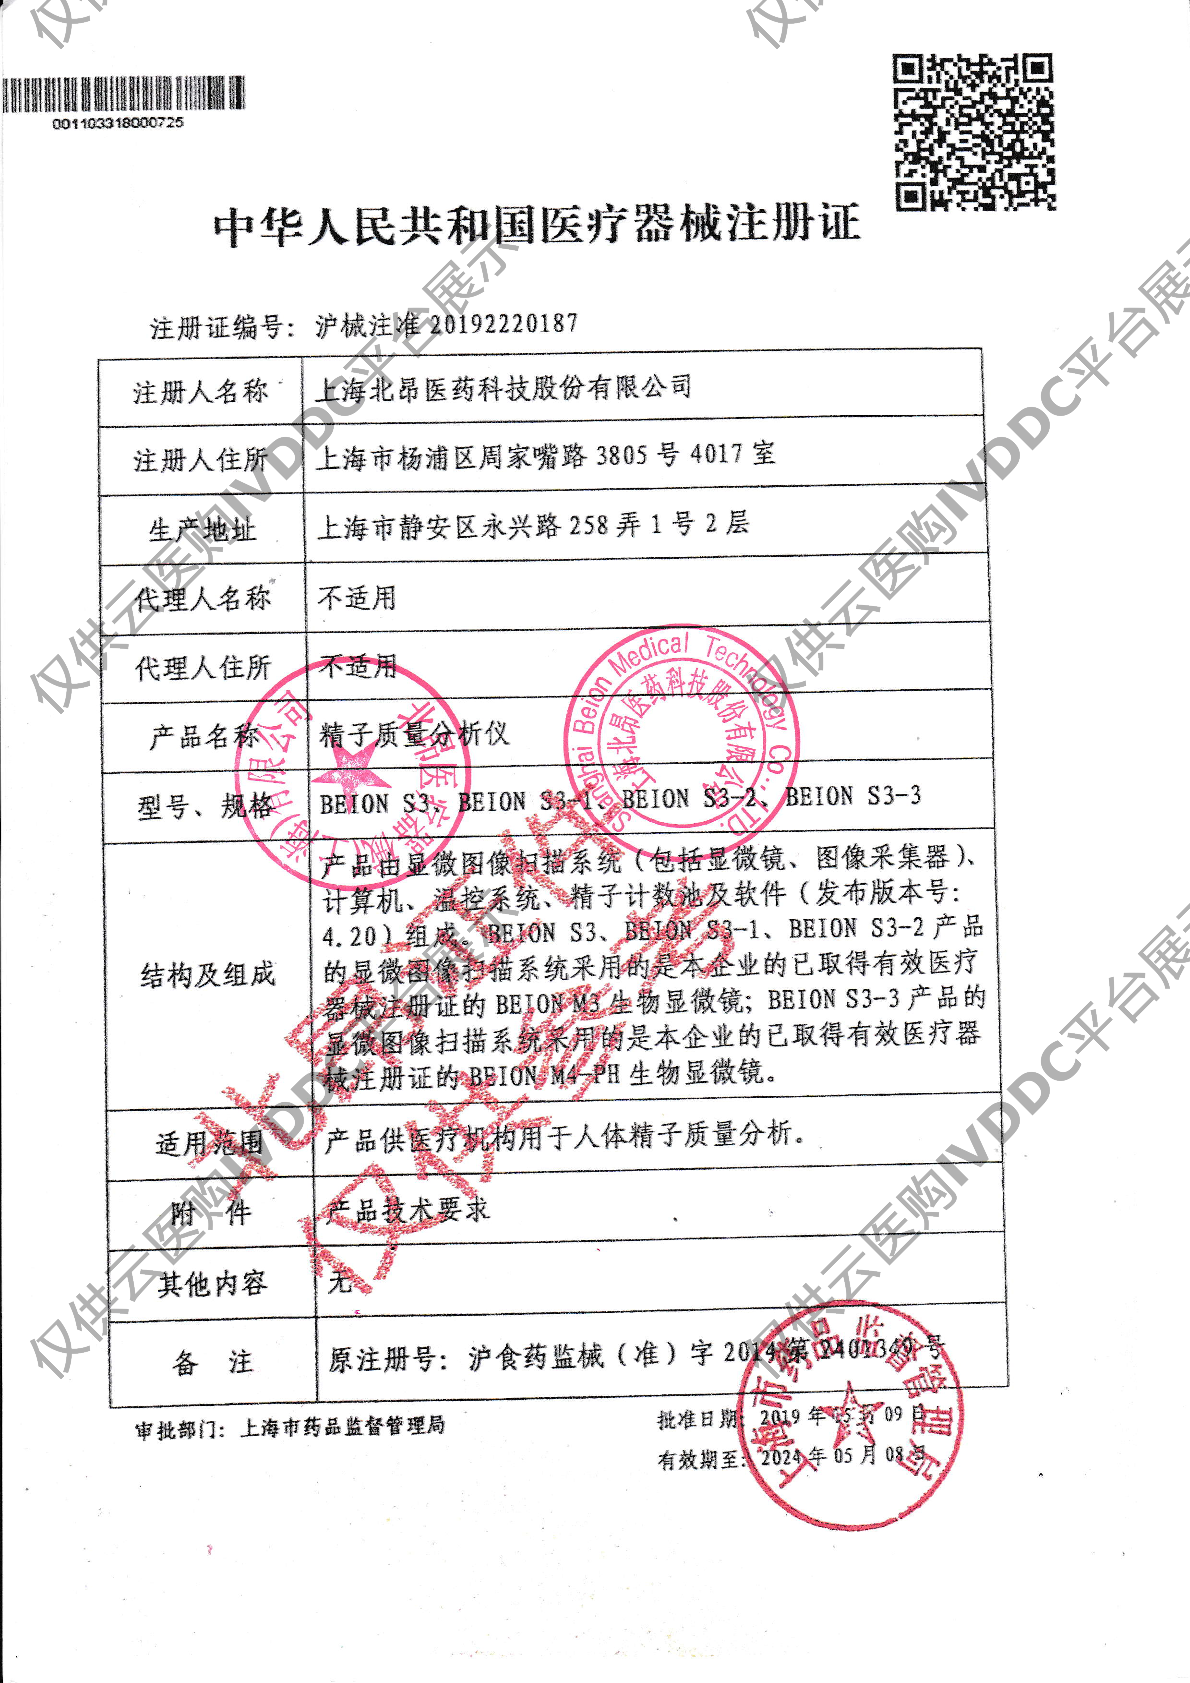 【北昂】精子质量分析仪BEION S3-2注册证